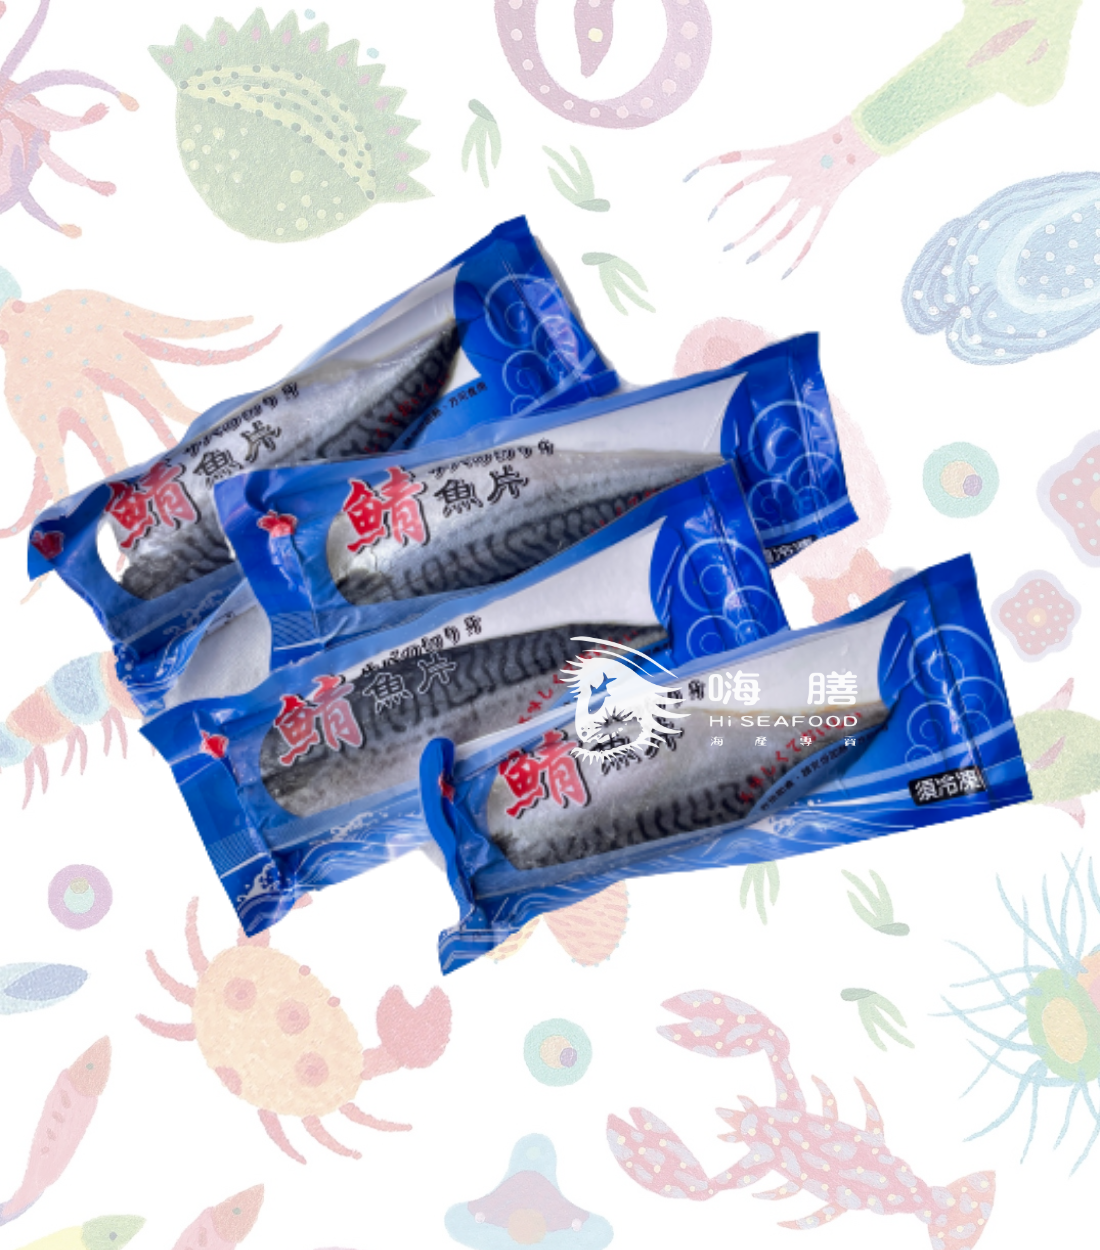 挪威薄鹽鯖魚片